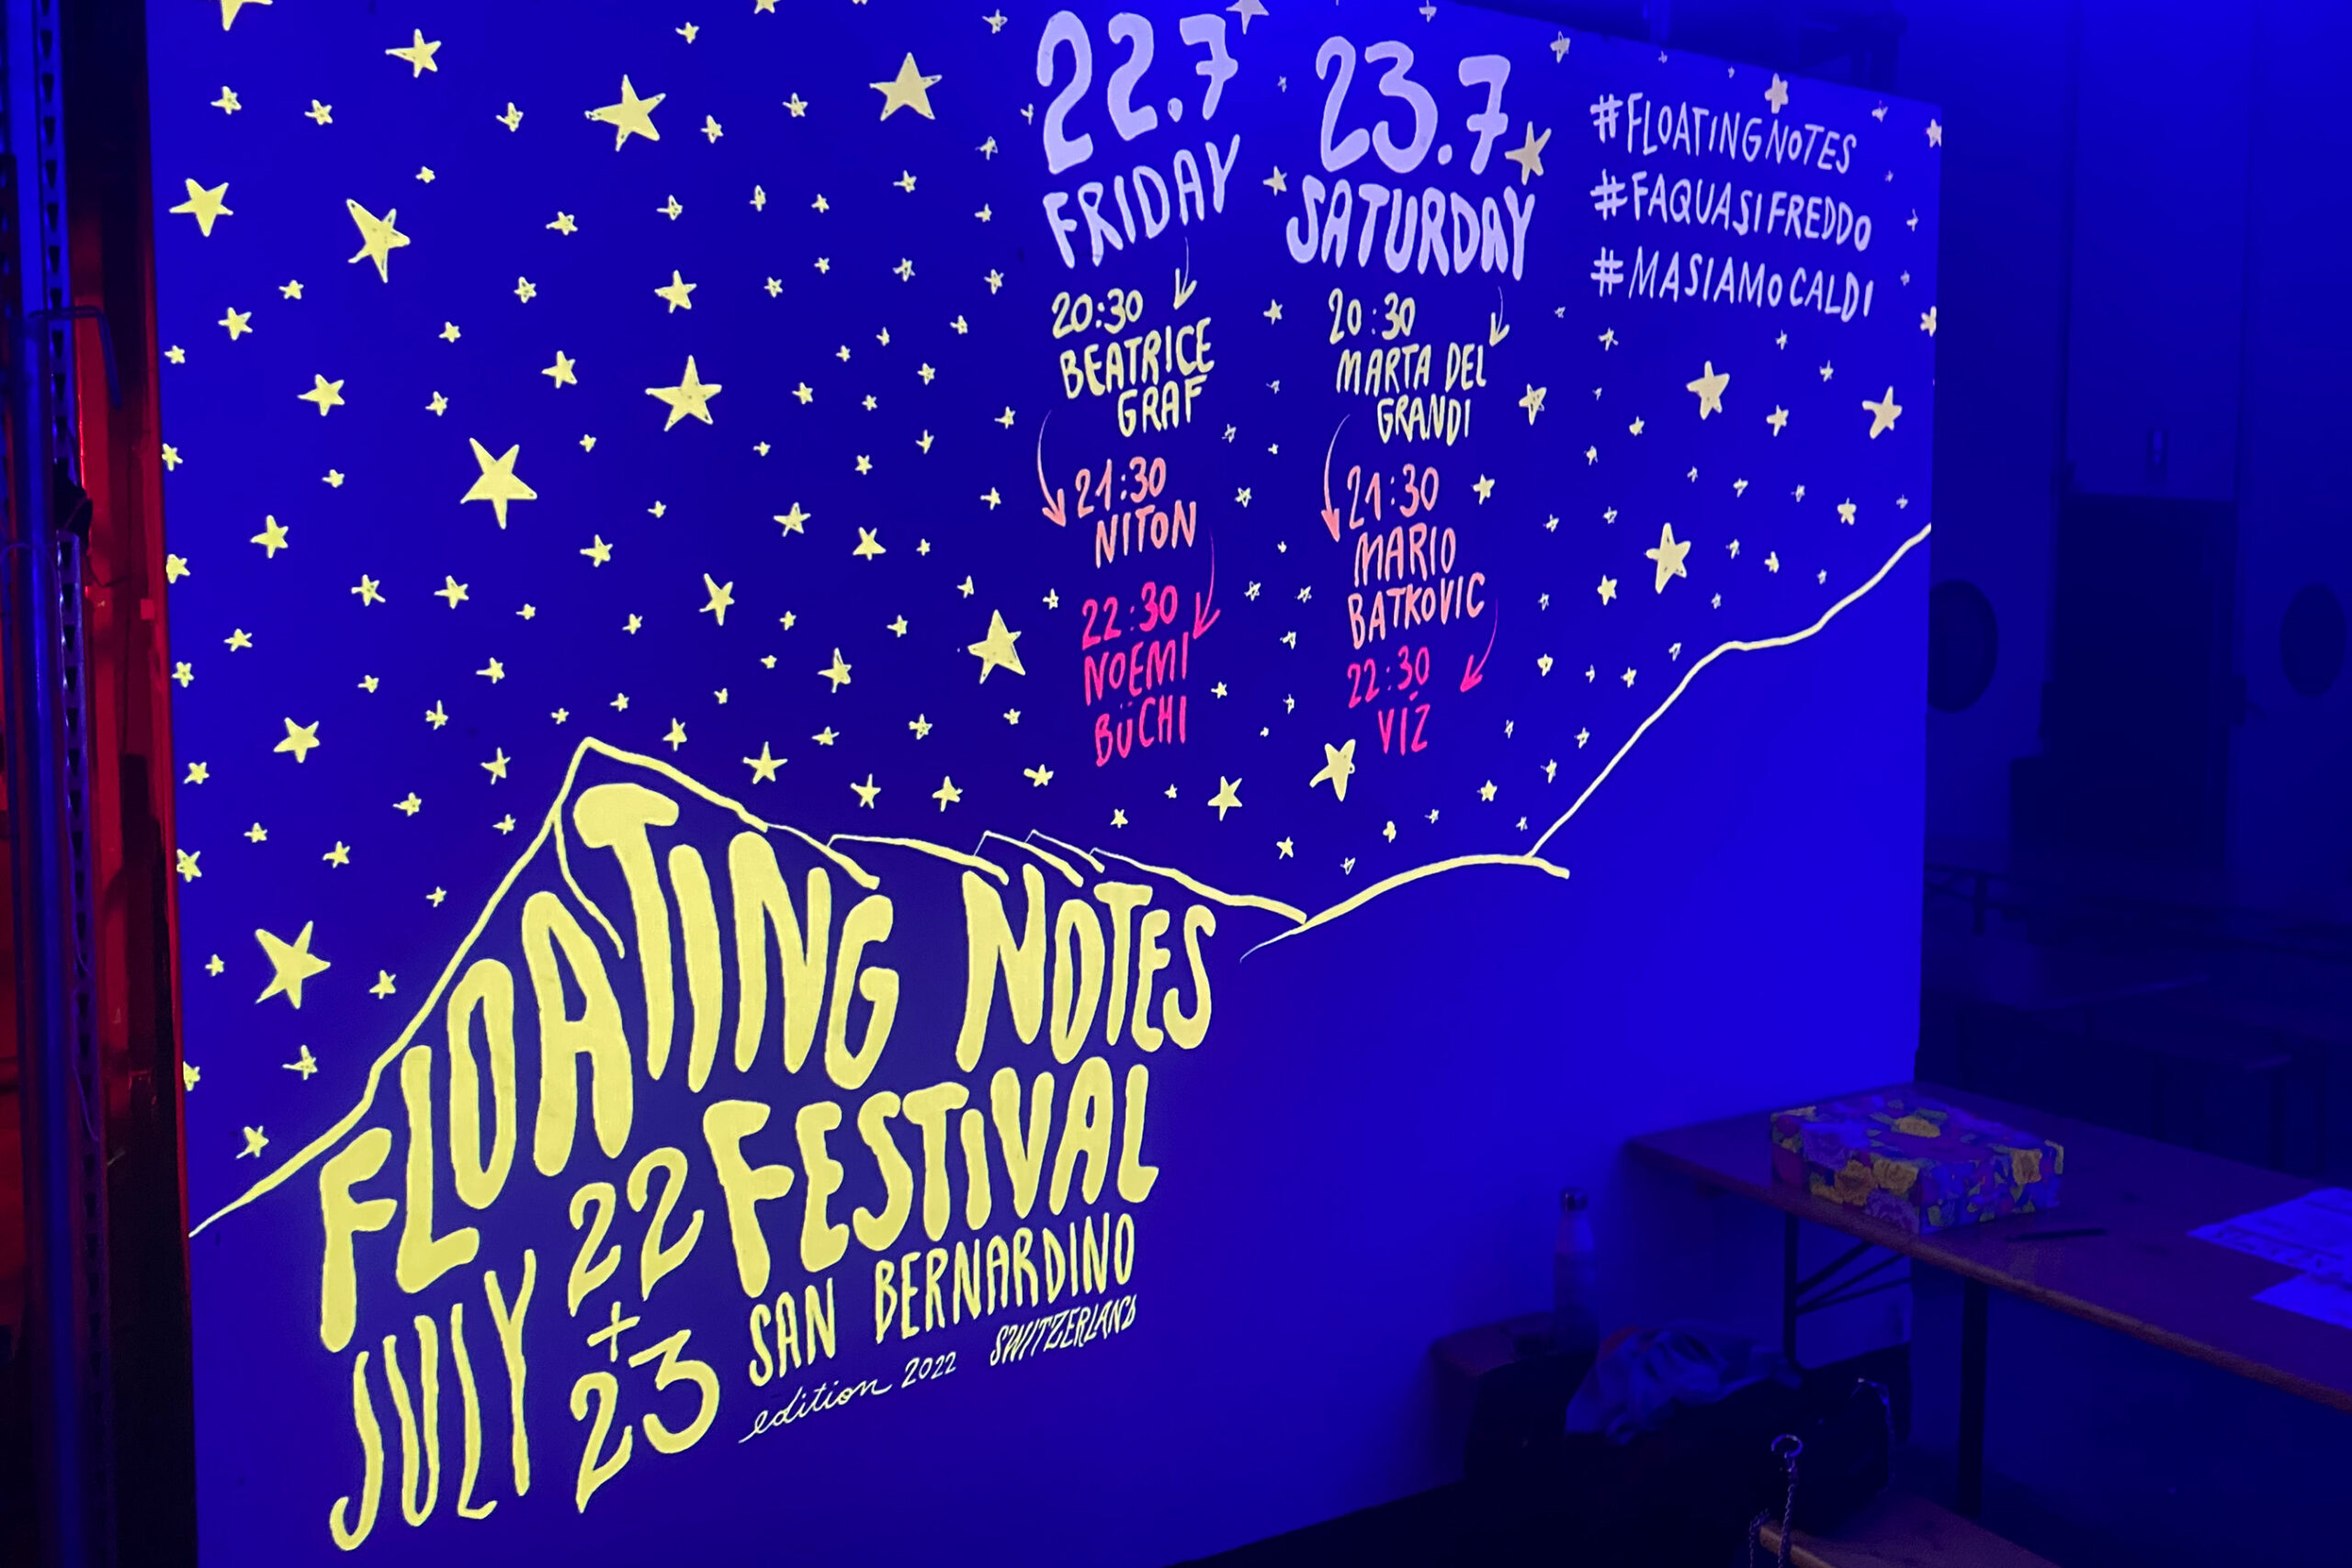 Le Floating Notes Festival: un événement hors des sentiers battus